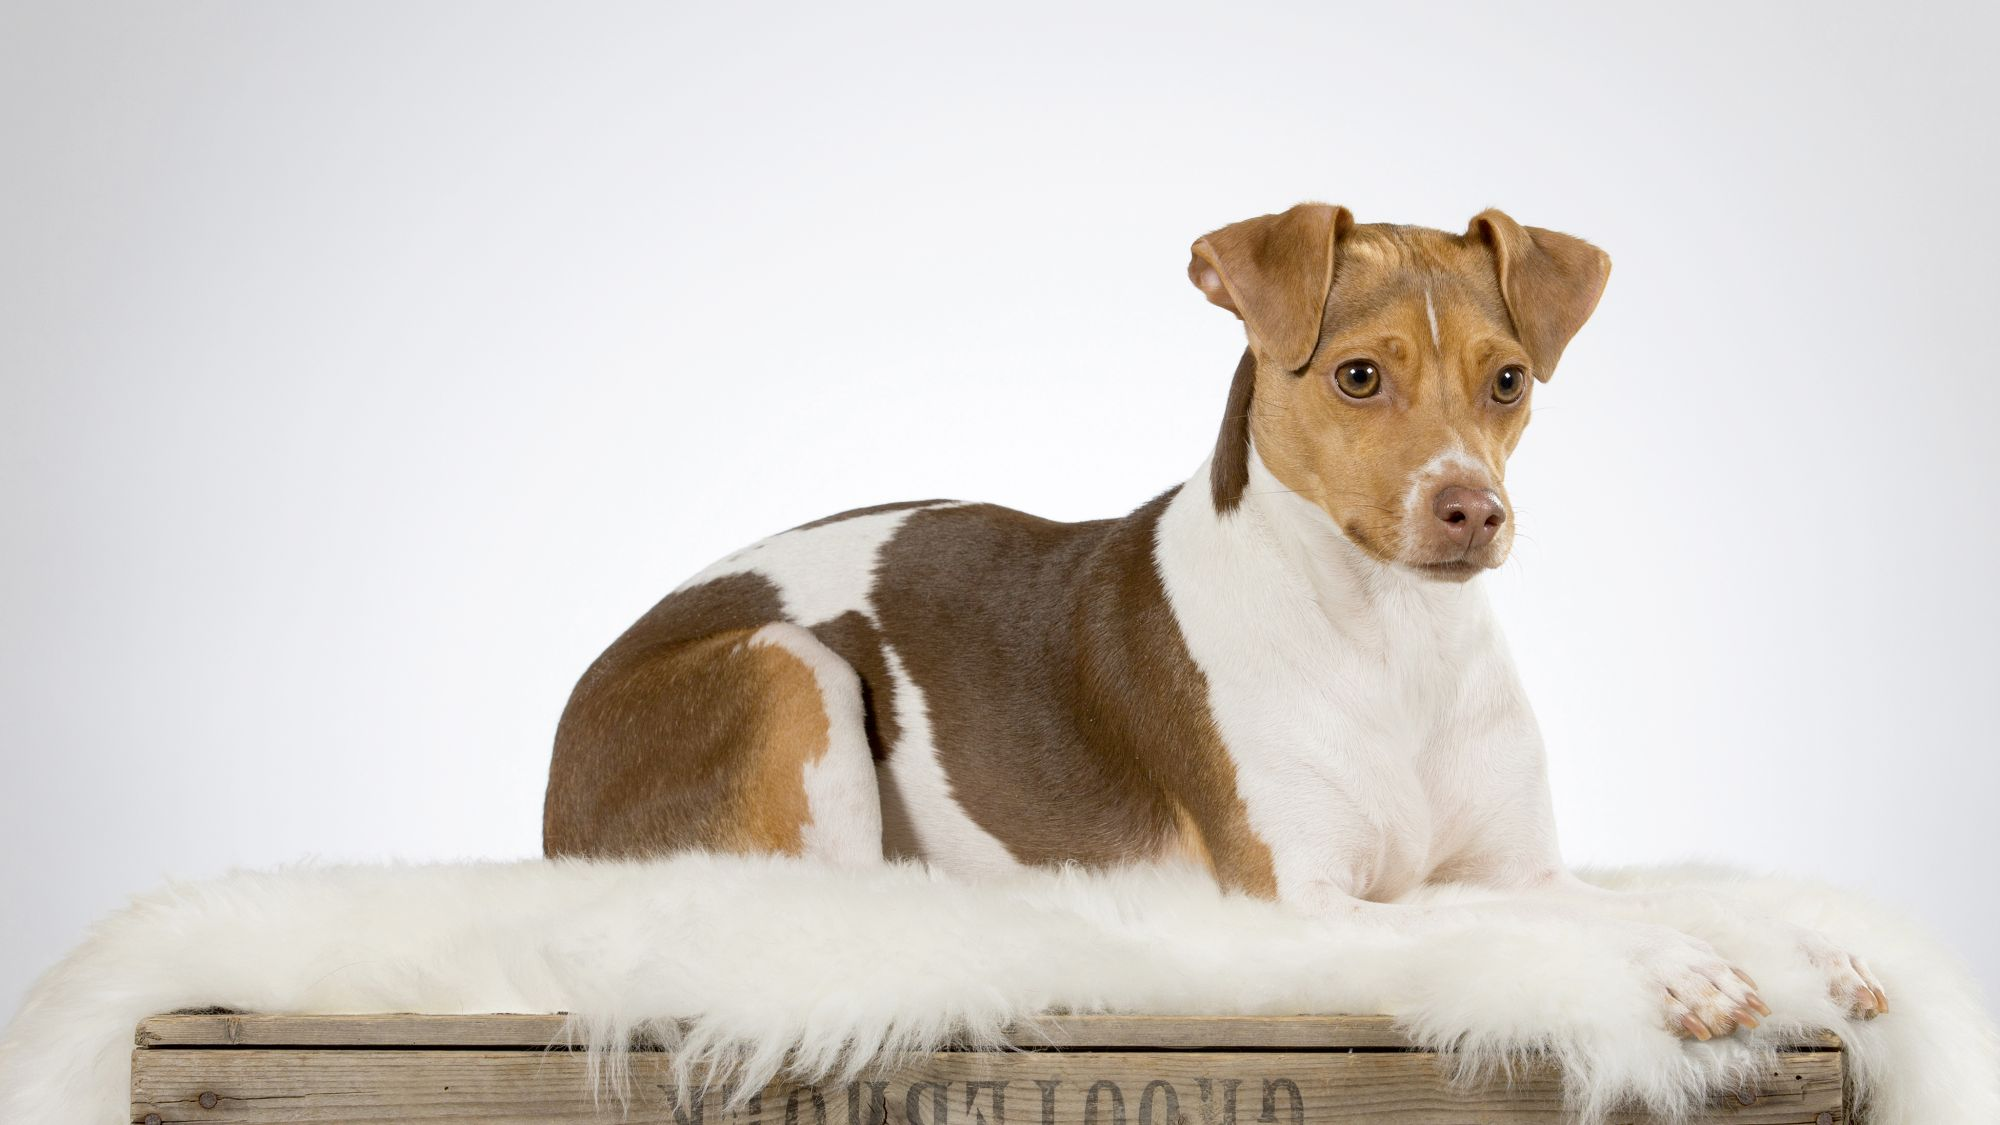 Brazilian Terrier lying on fur on a wooden box 